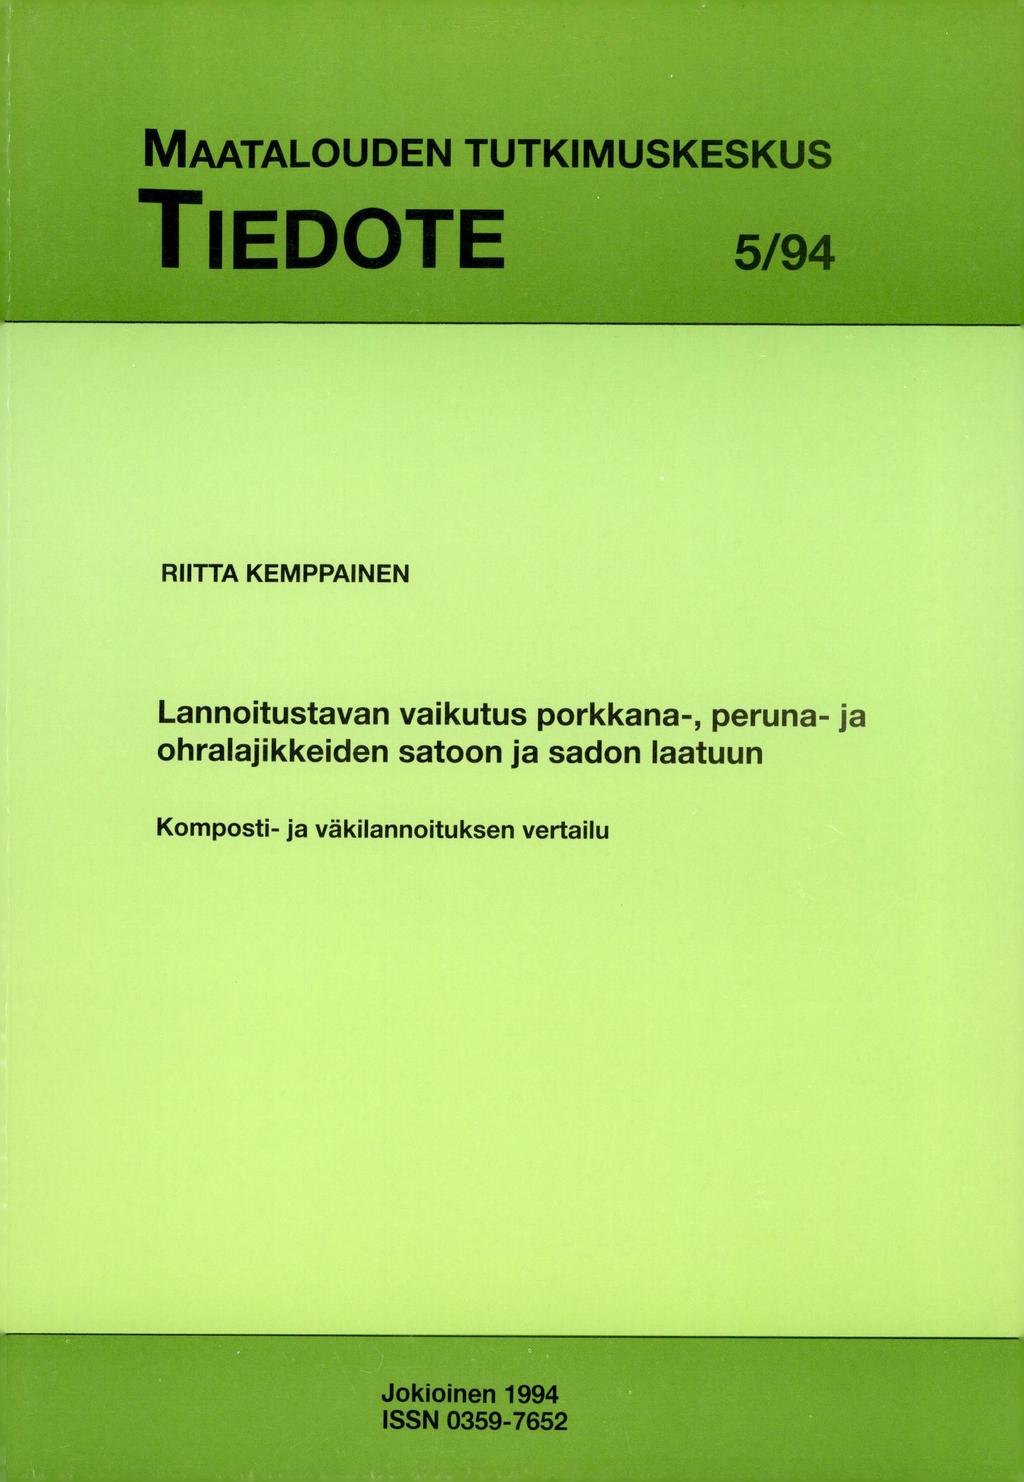 MAATALOUDEN TUTKIMUSKESKUS TIEDOTE 5/94 RIITTA KEMPPAINEN Lannoitustavan vaikutus porkkana-, peruna- ja